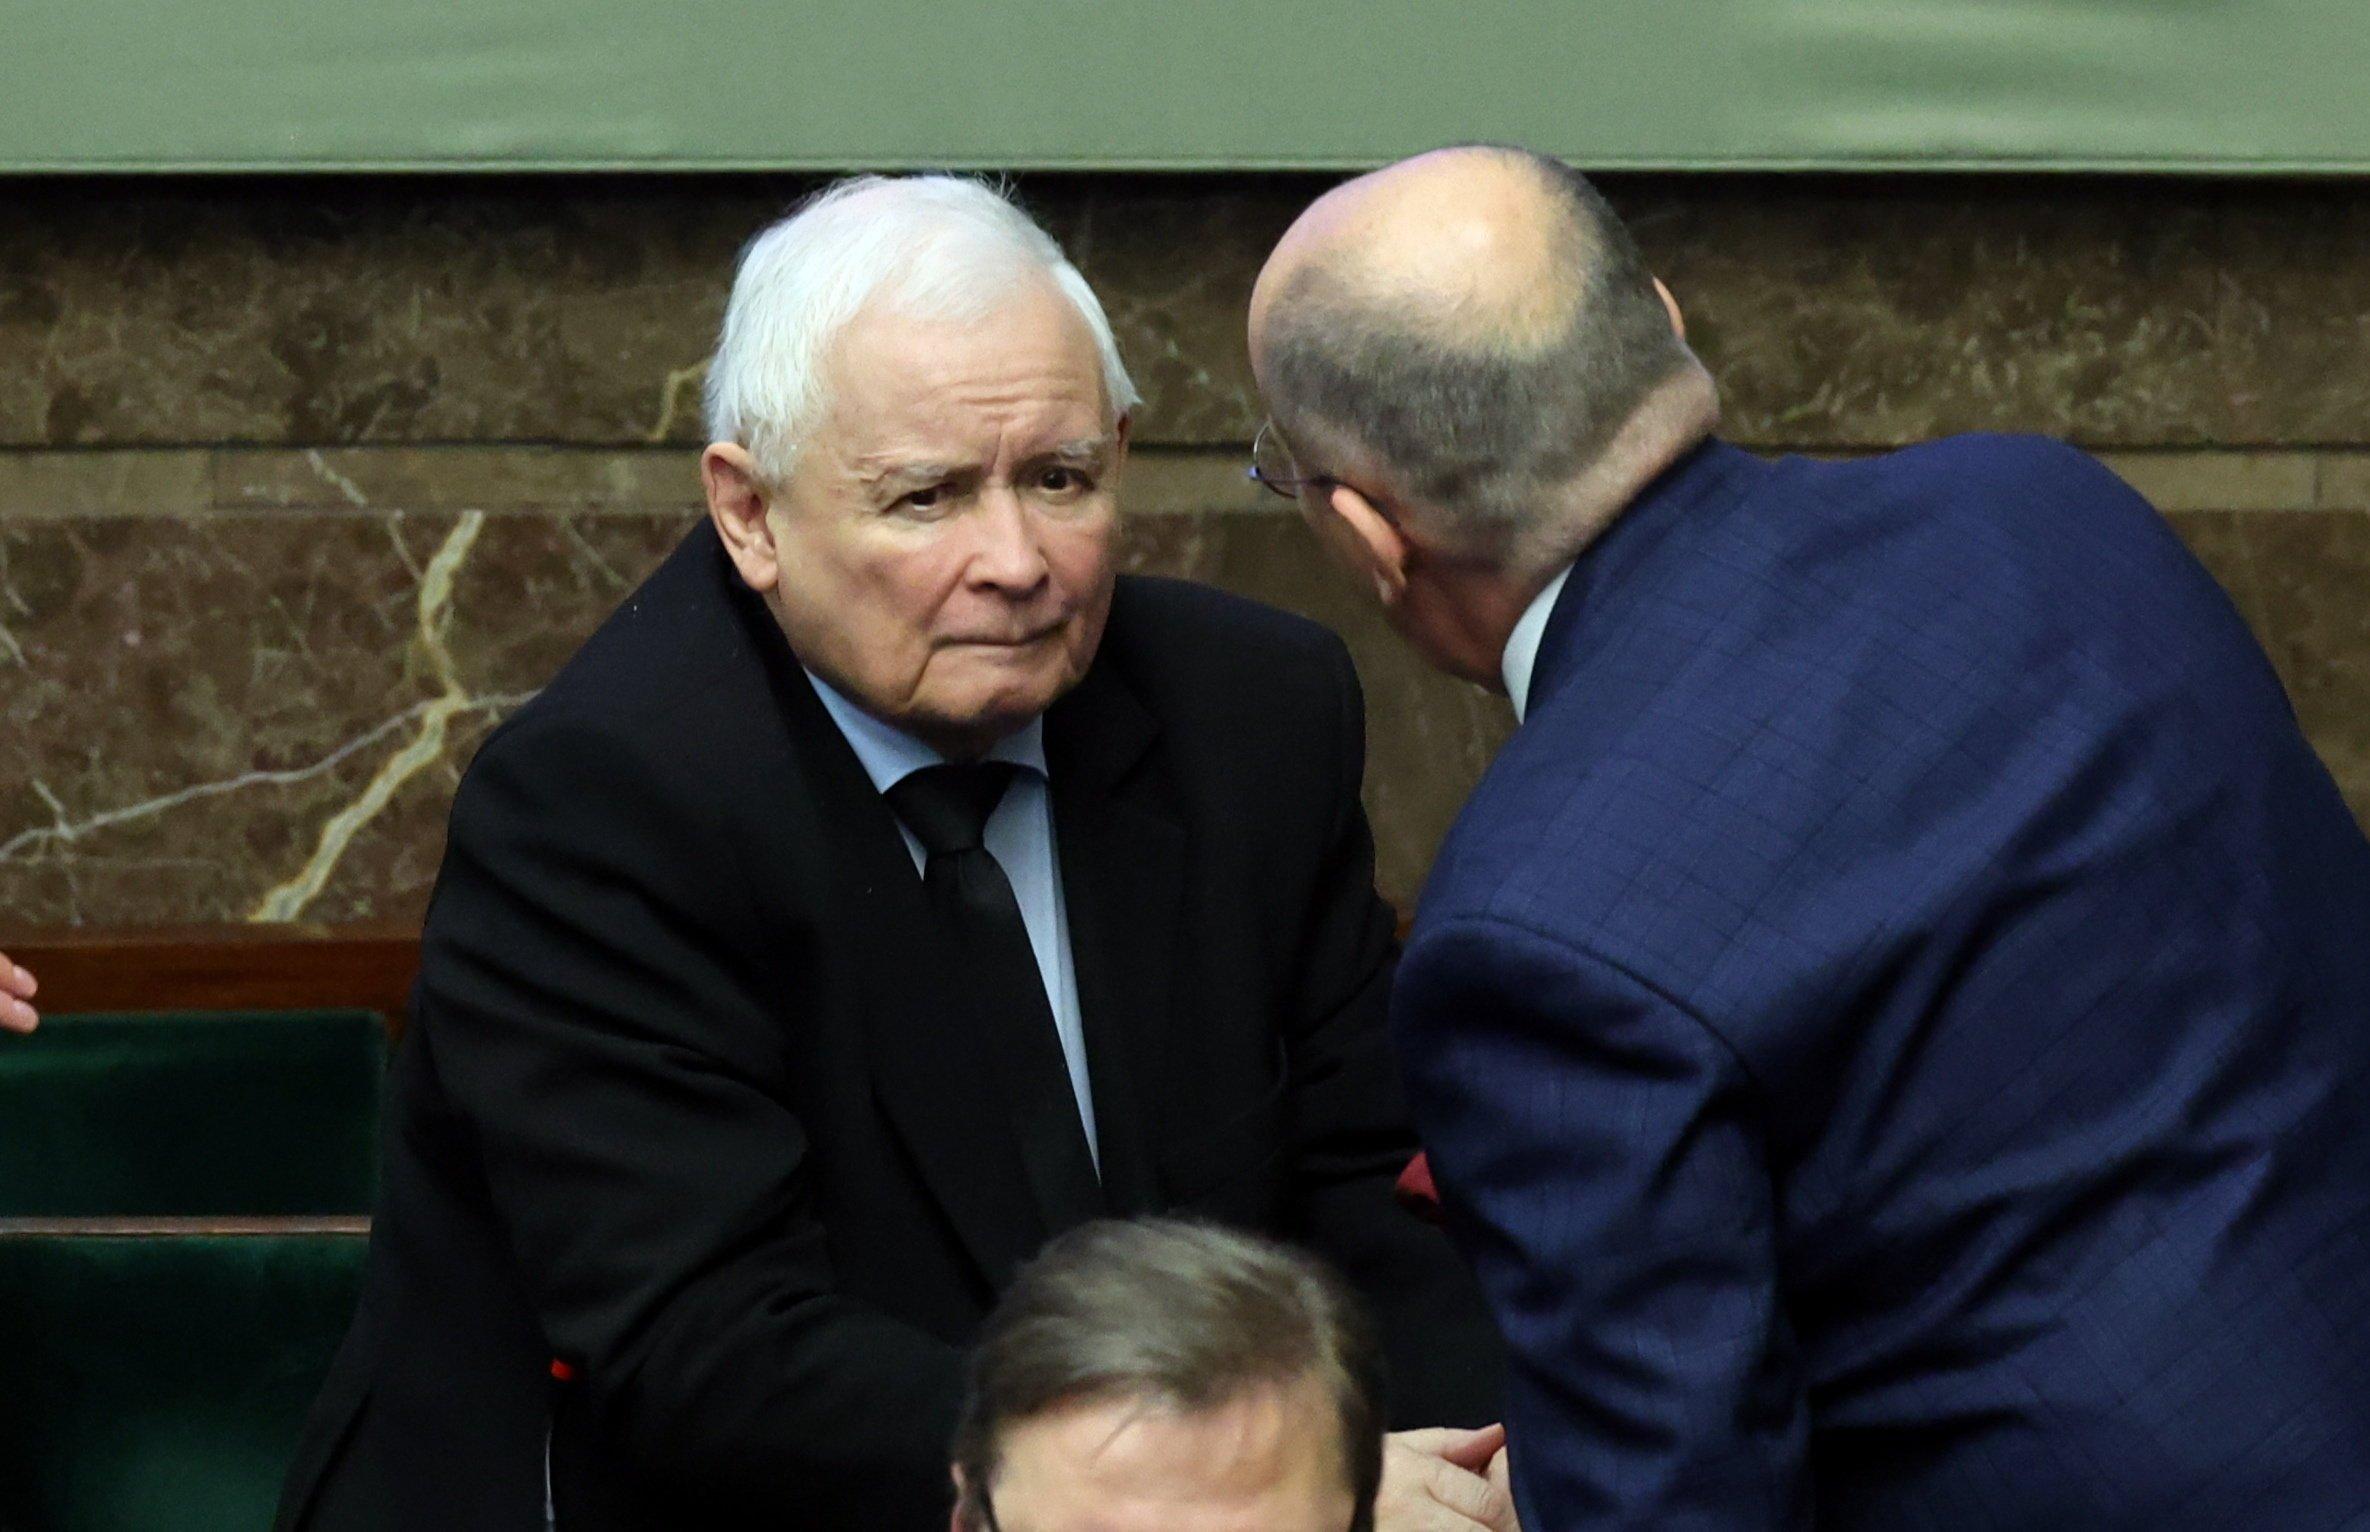 Prezes PiS Jarosław Kaczyński siedzie w ławach rządowych w Sejmie. Pochyla się nad nim jakiś mężczyzna